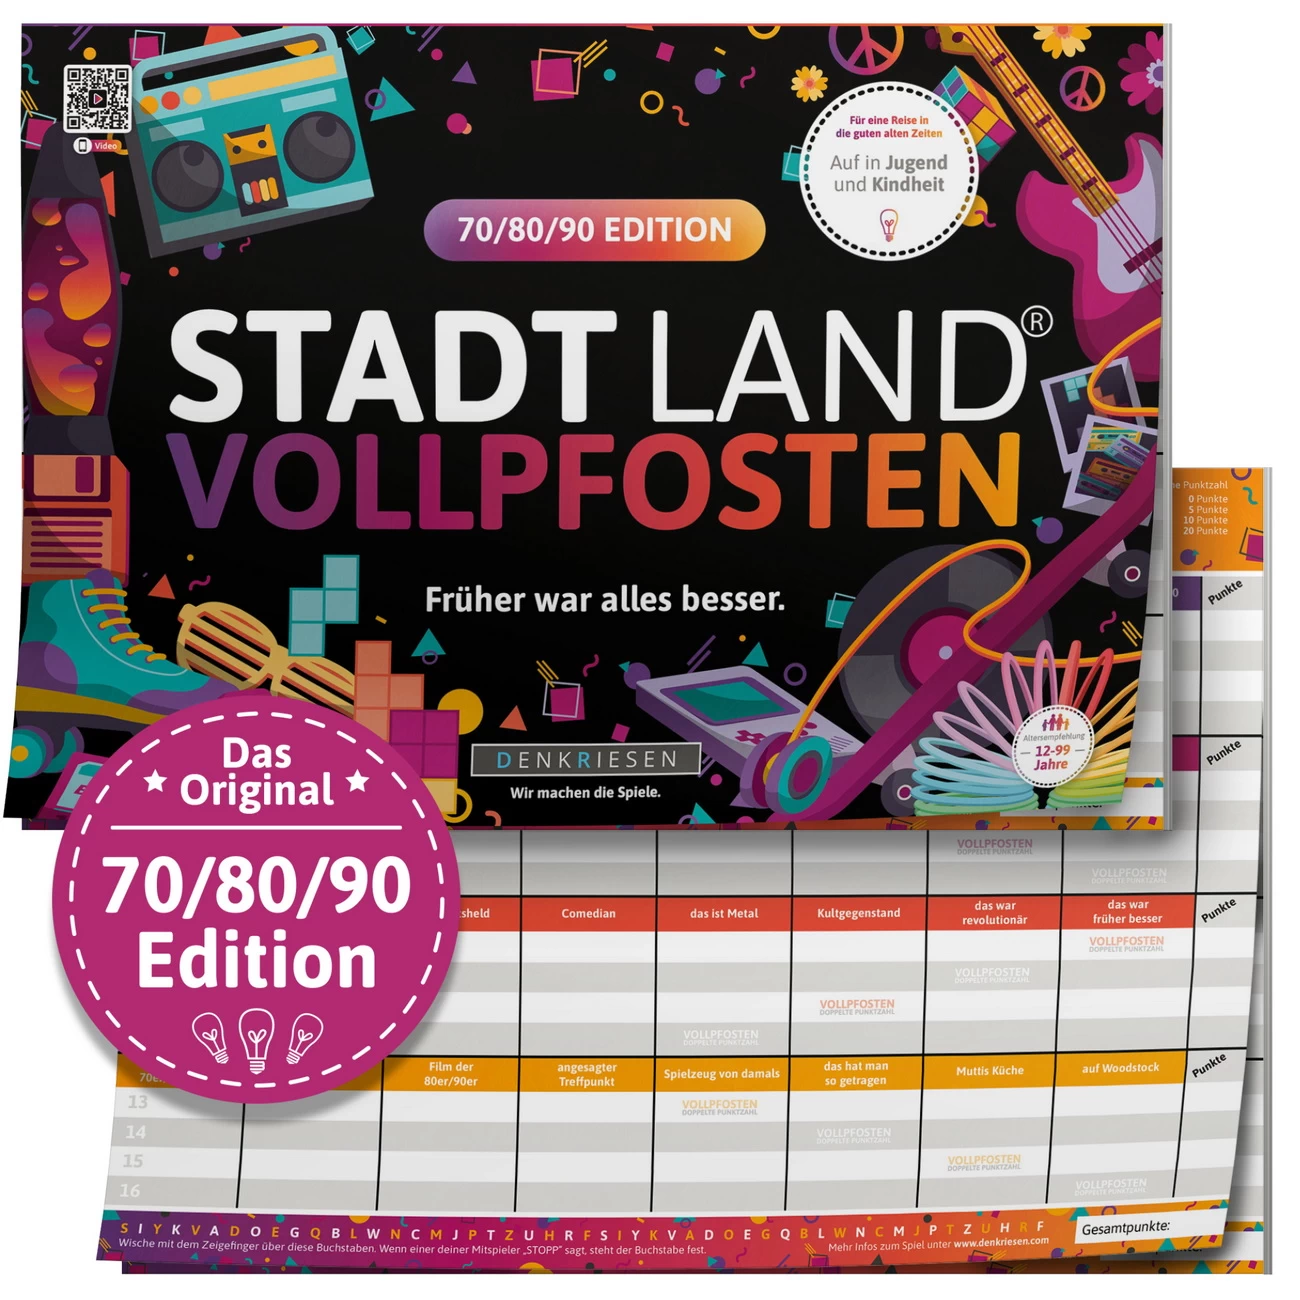 70/80/90 Edition STADT LAND VOLLPFOSTEN